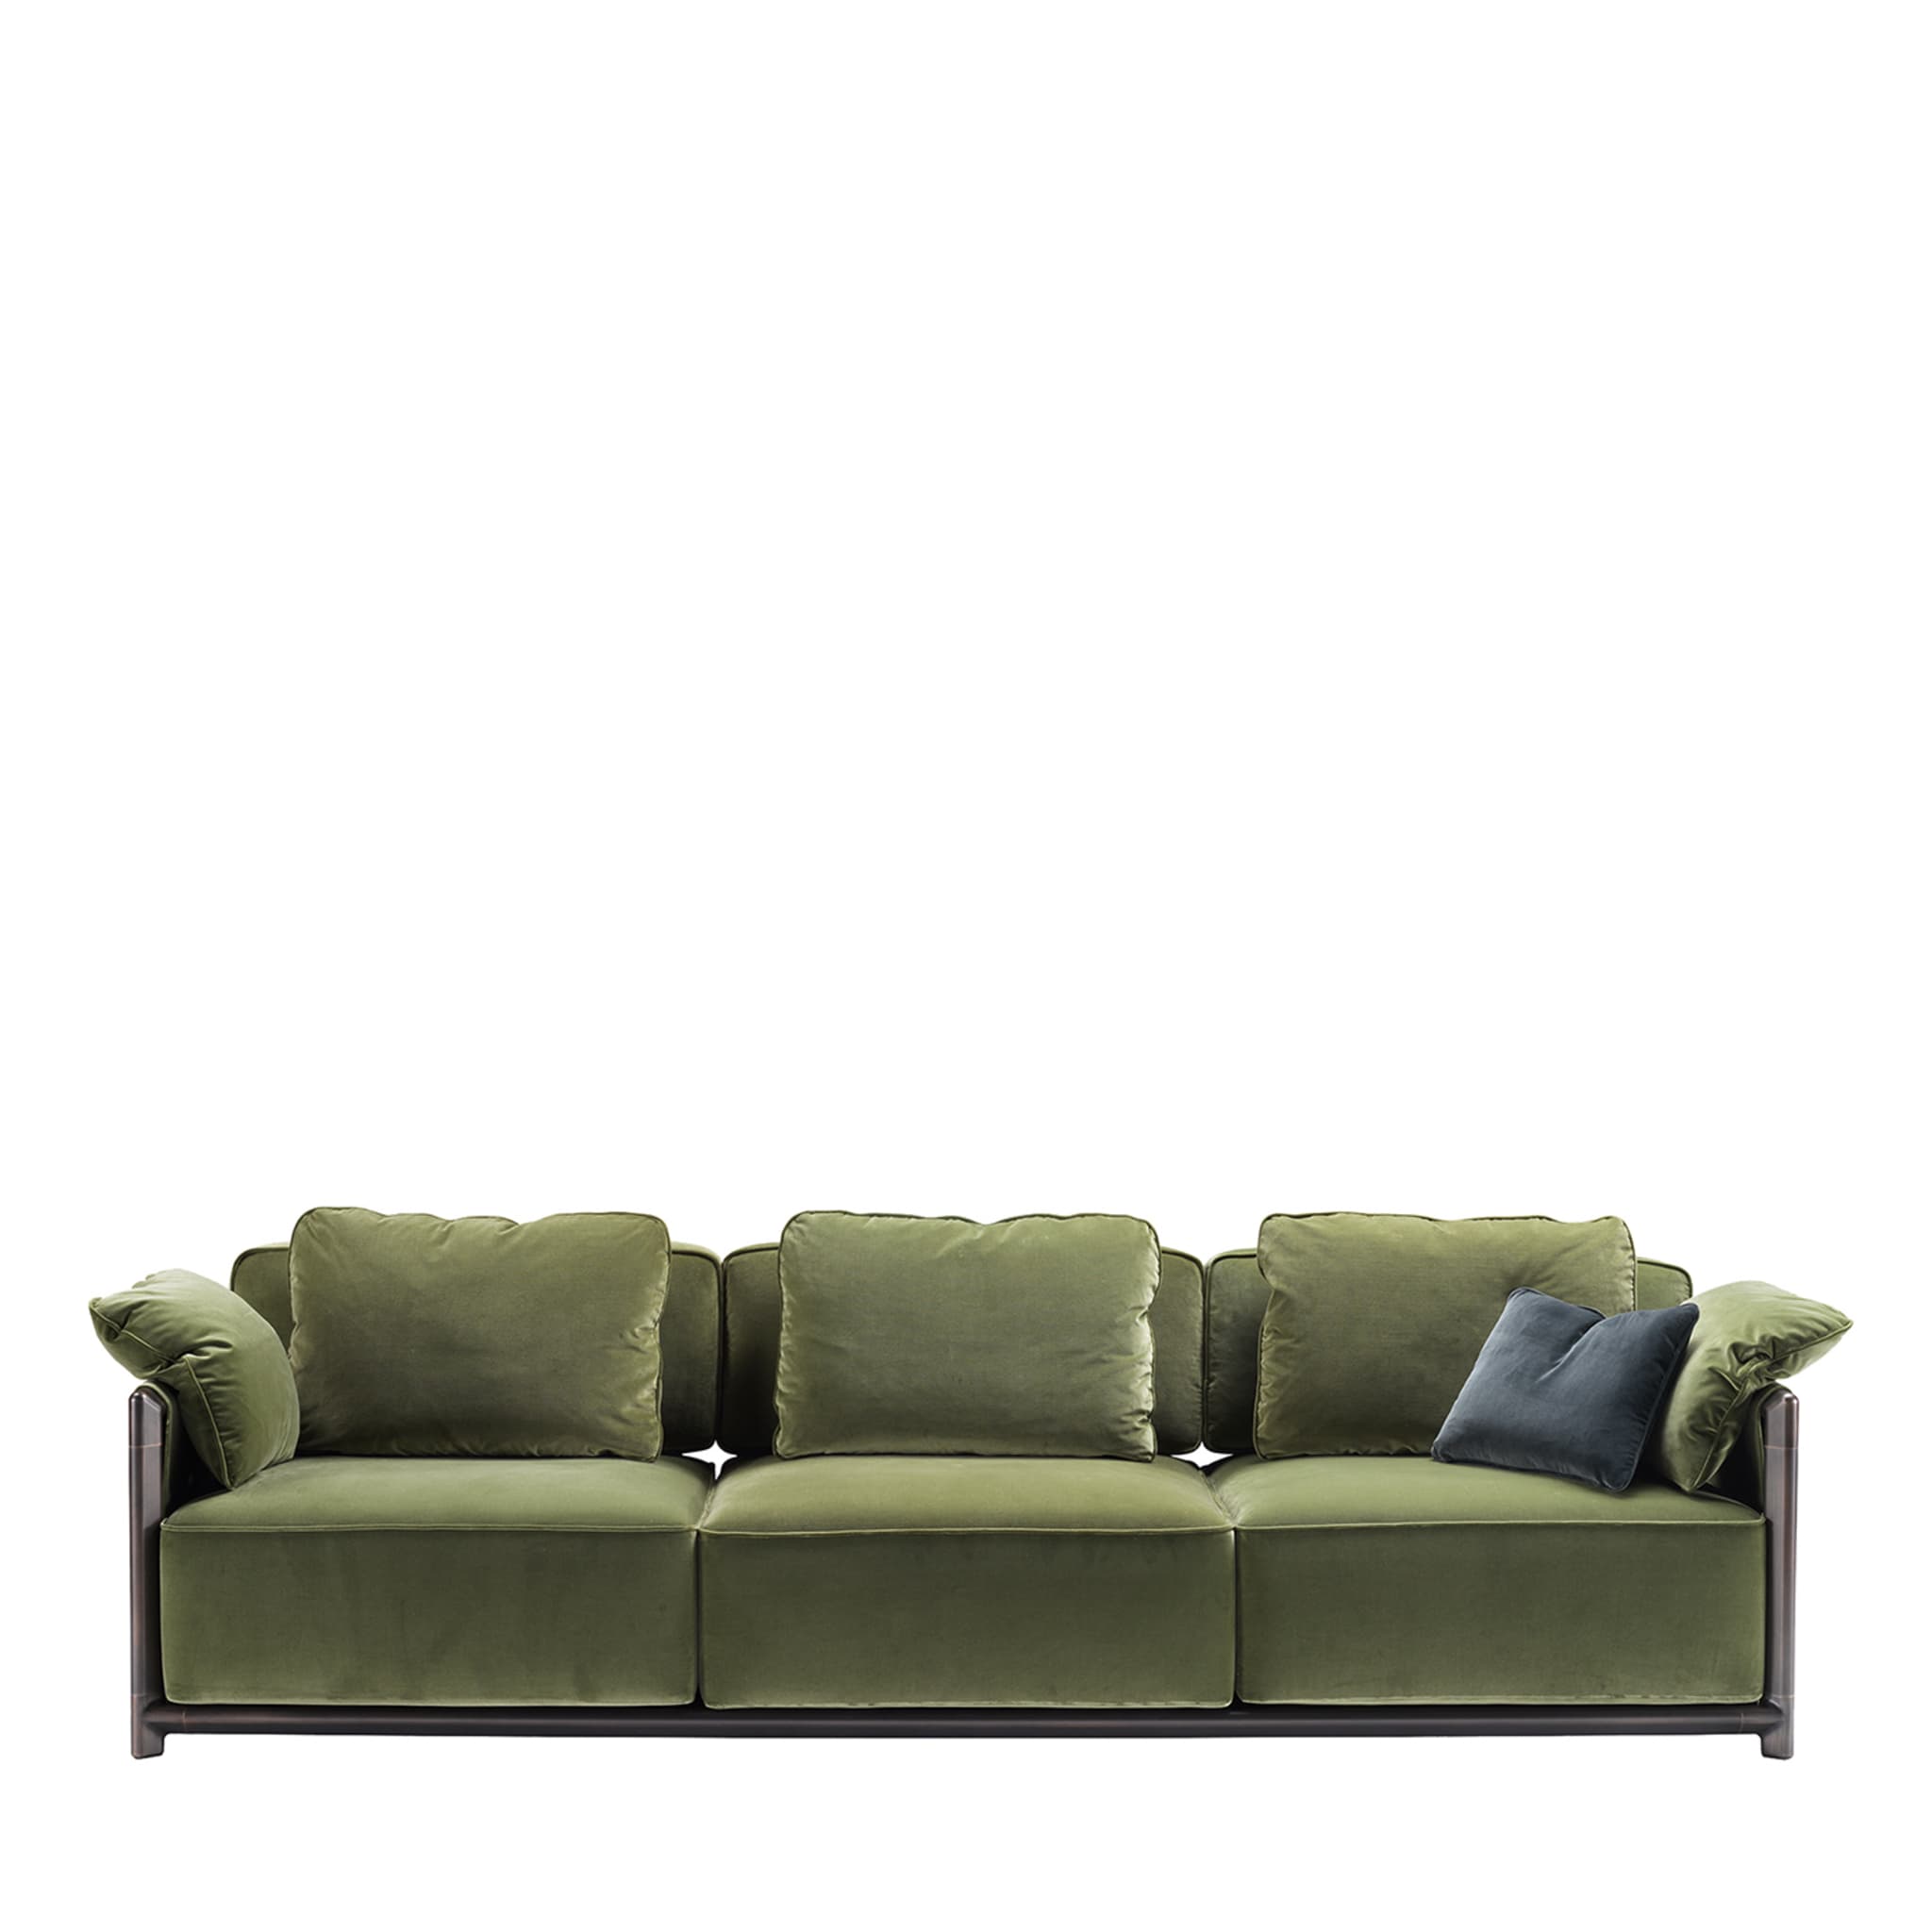 Dodo Green Sofa by Stefano Giovannoni - Main view